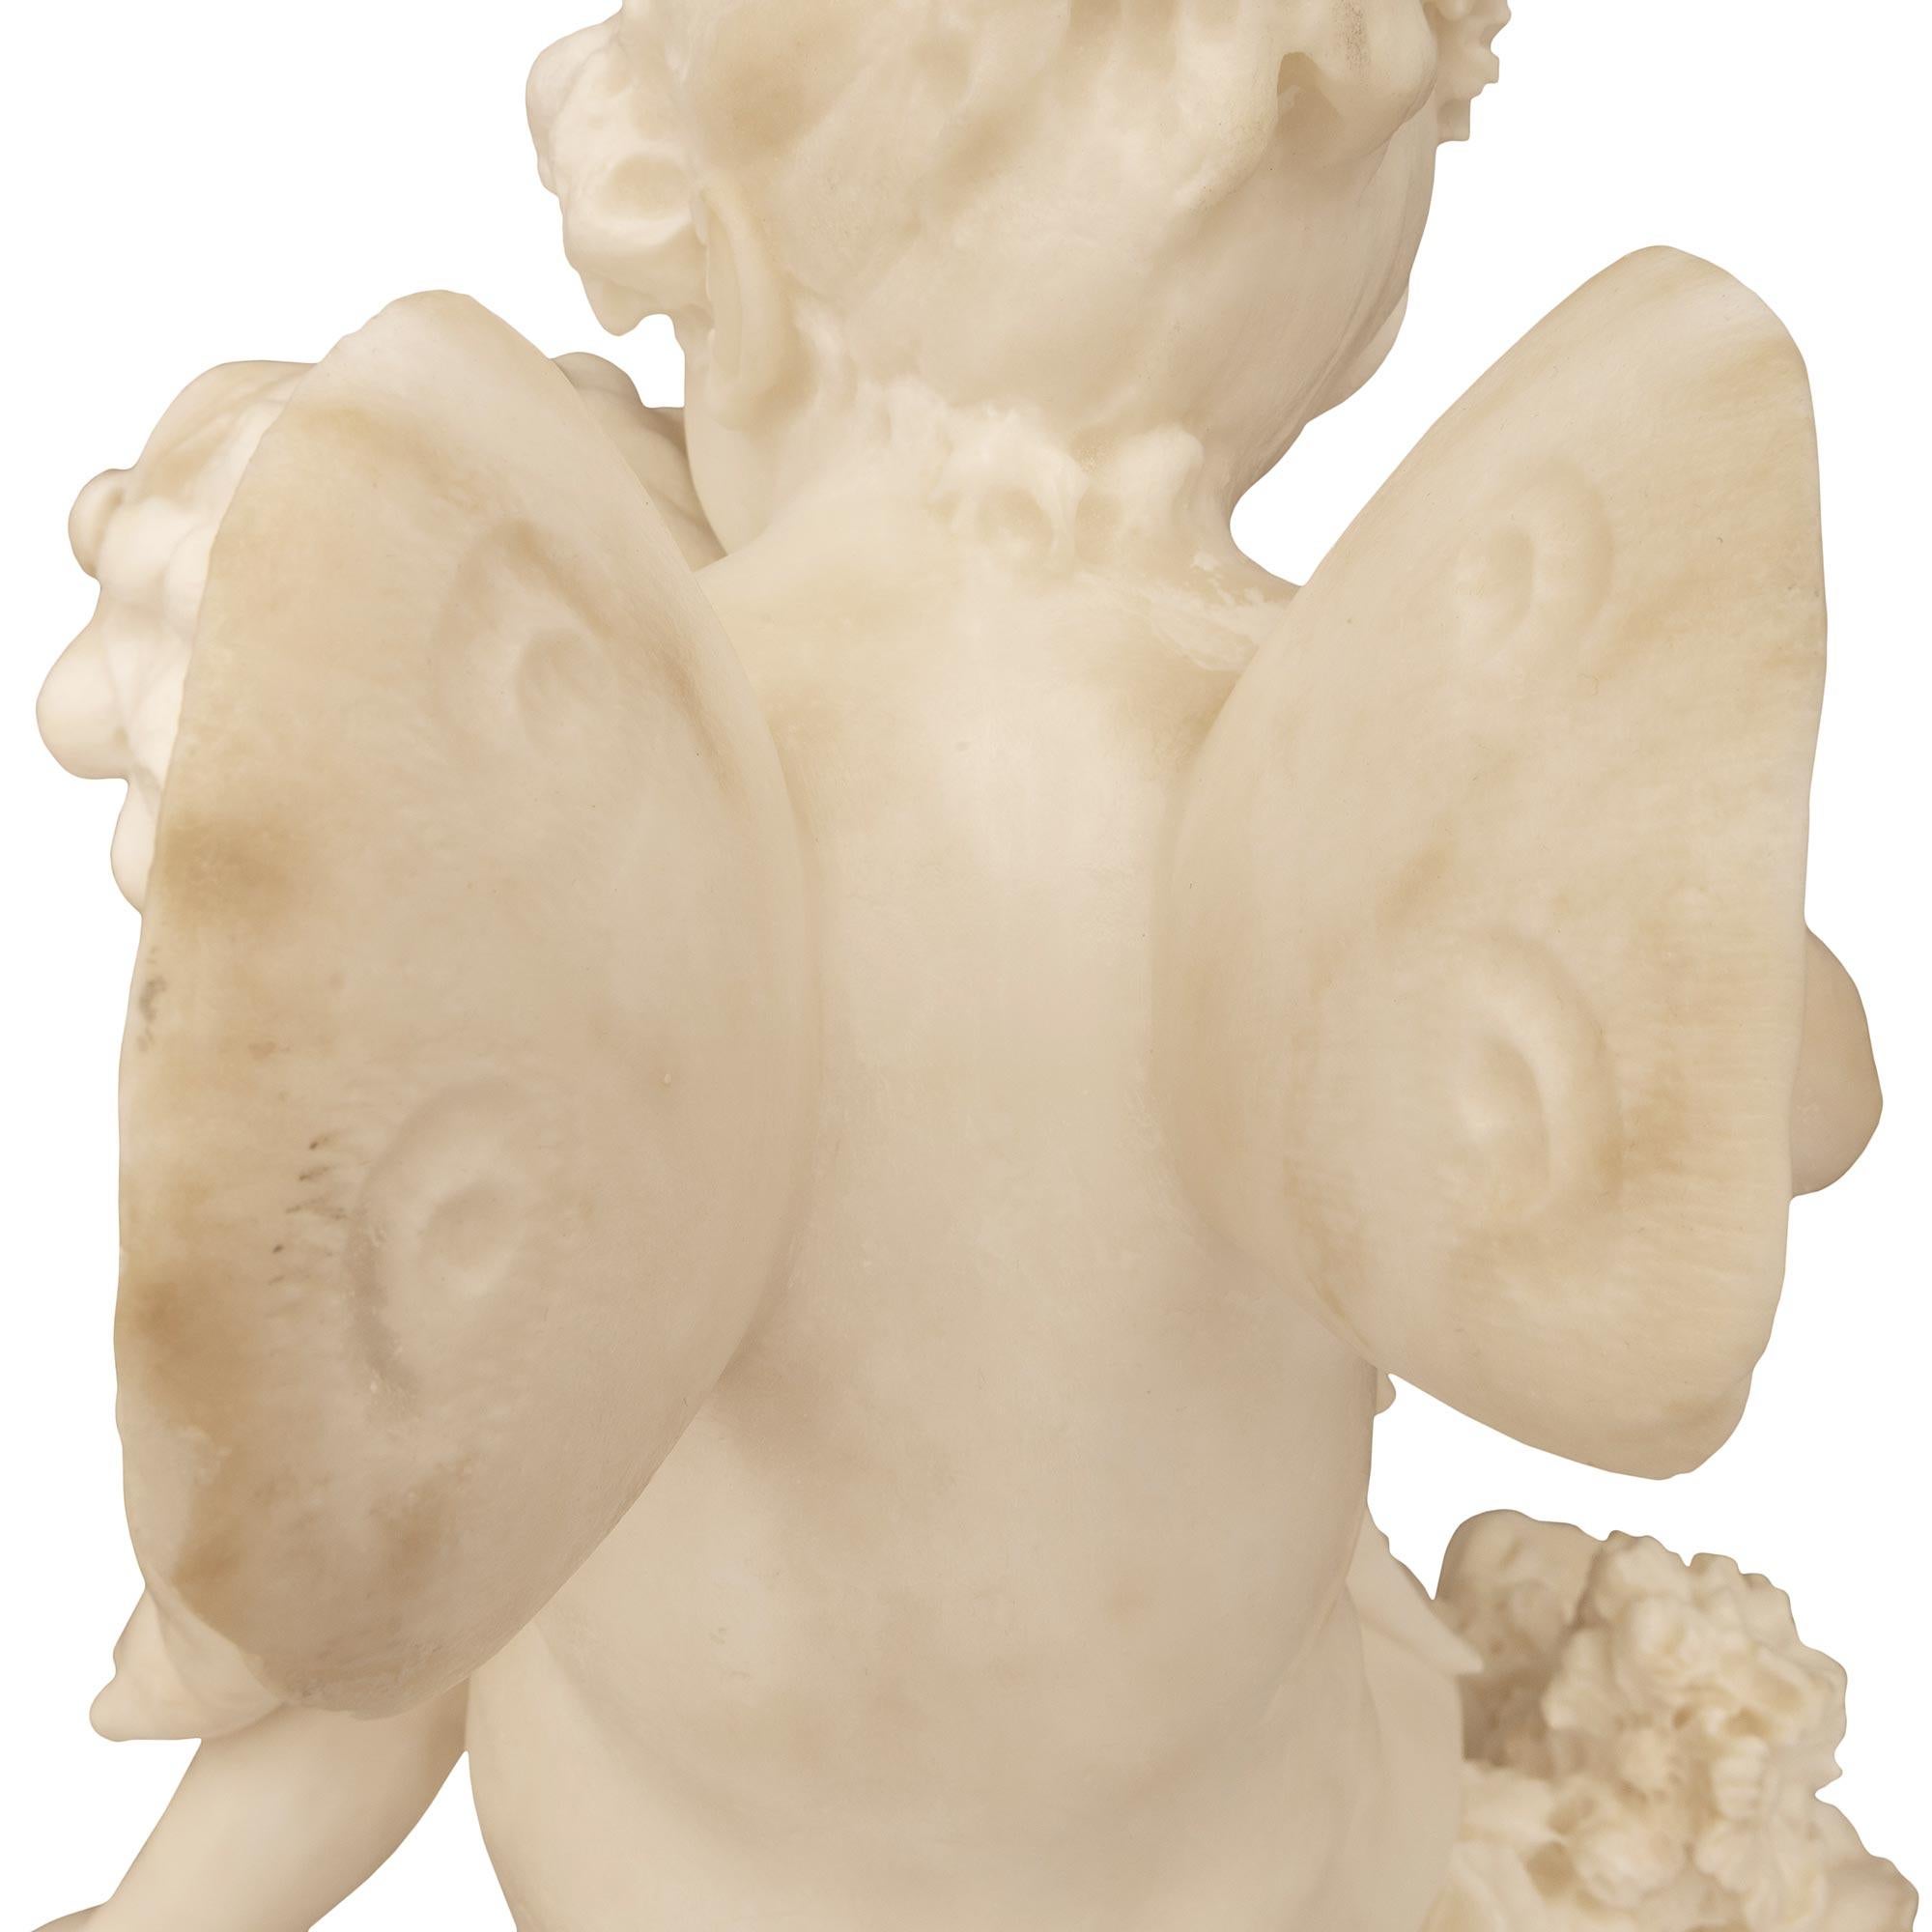 Italian 19th Century White Carrara Marble Statue Titled “Amore Sdegnato” For Sale 5